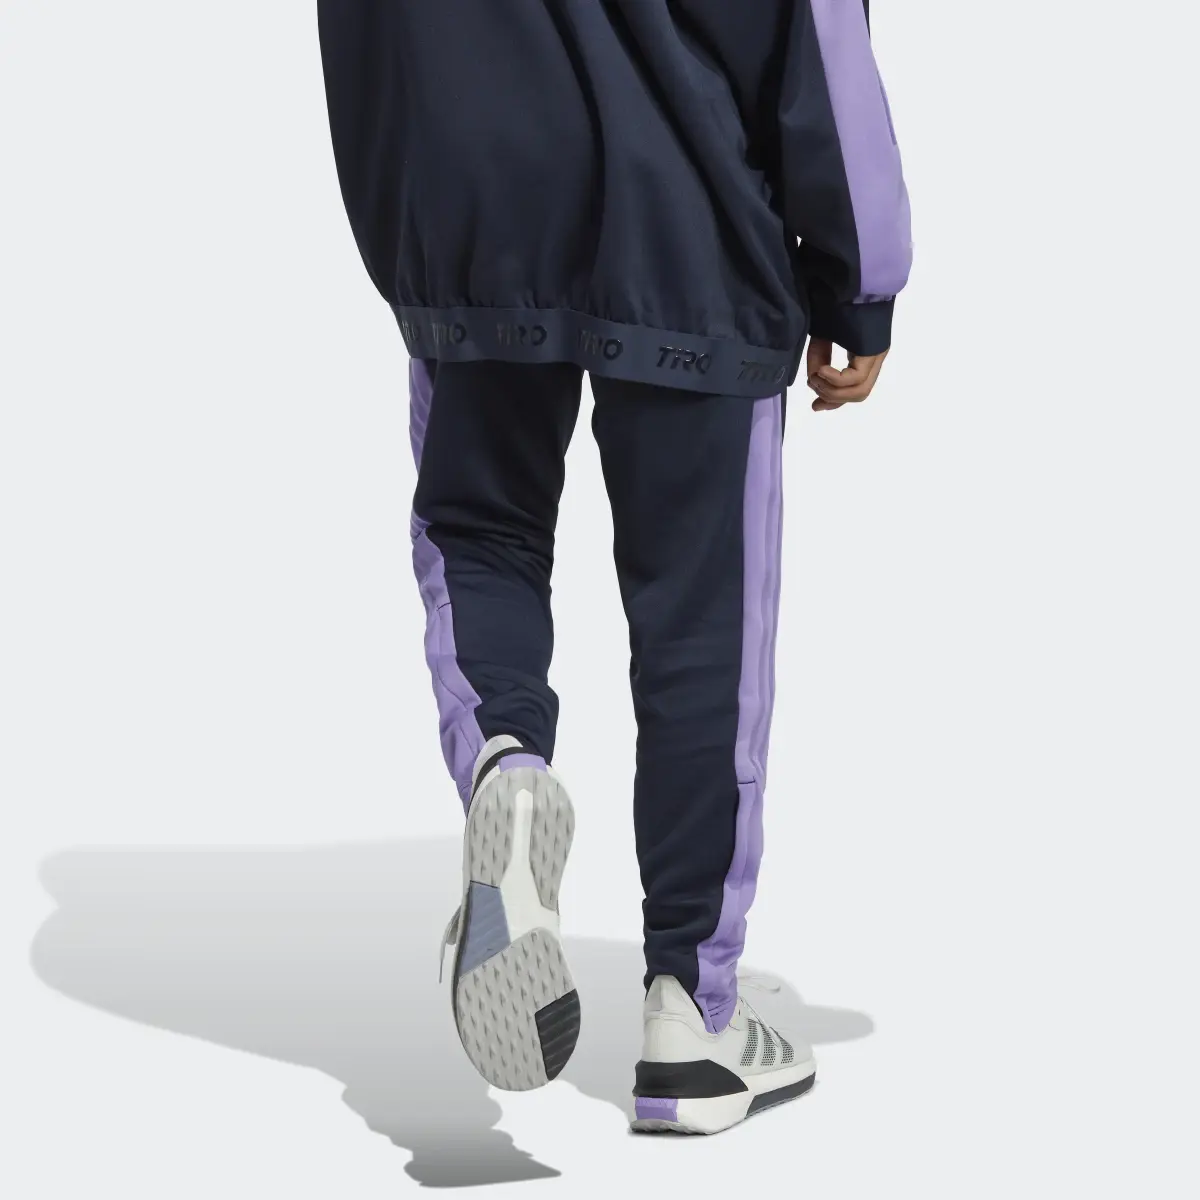 Adidas Pantalón Tiro Suit-Up Advanced. 2